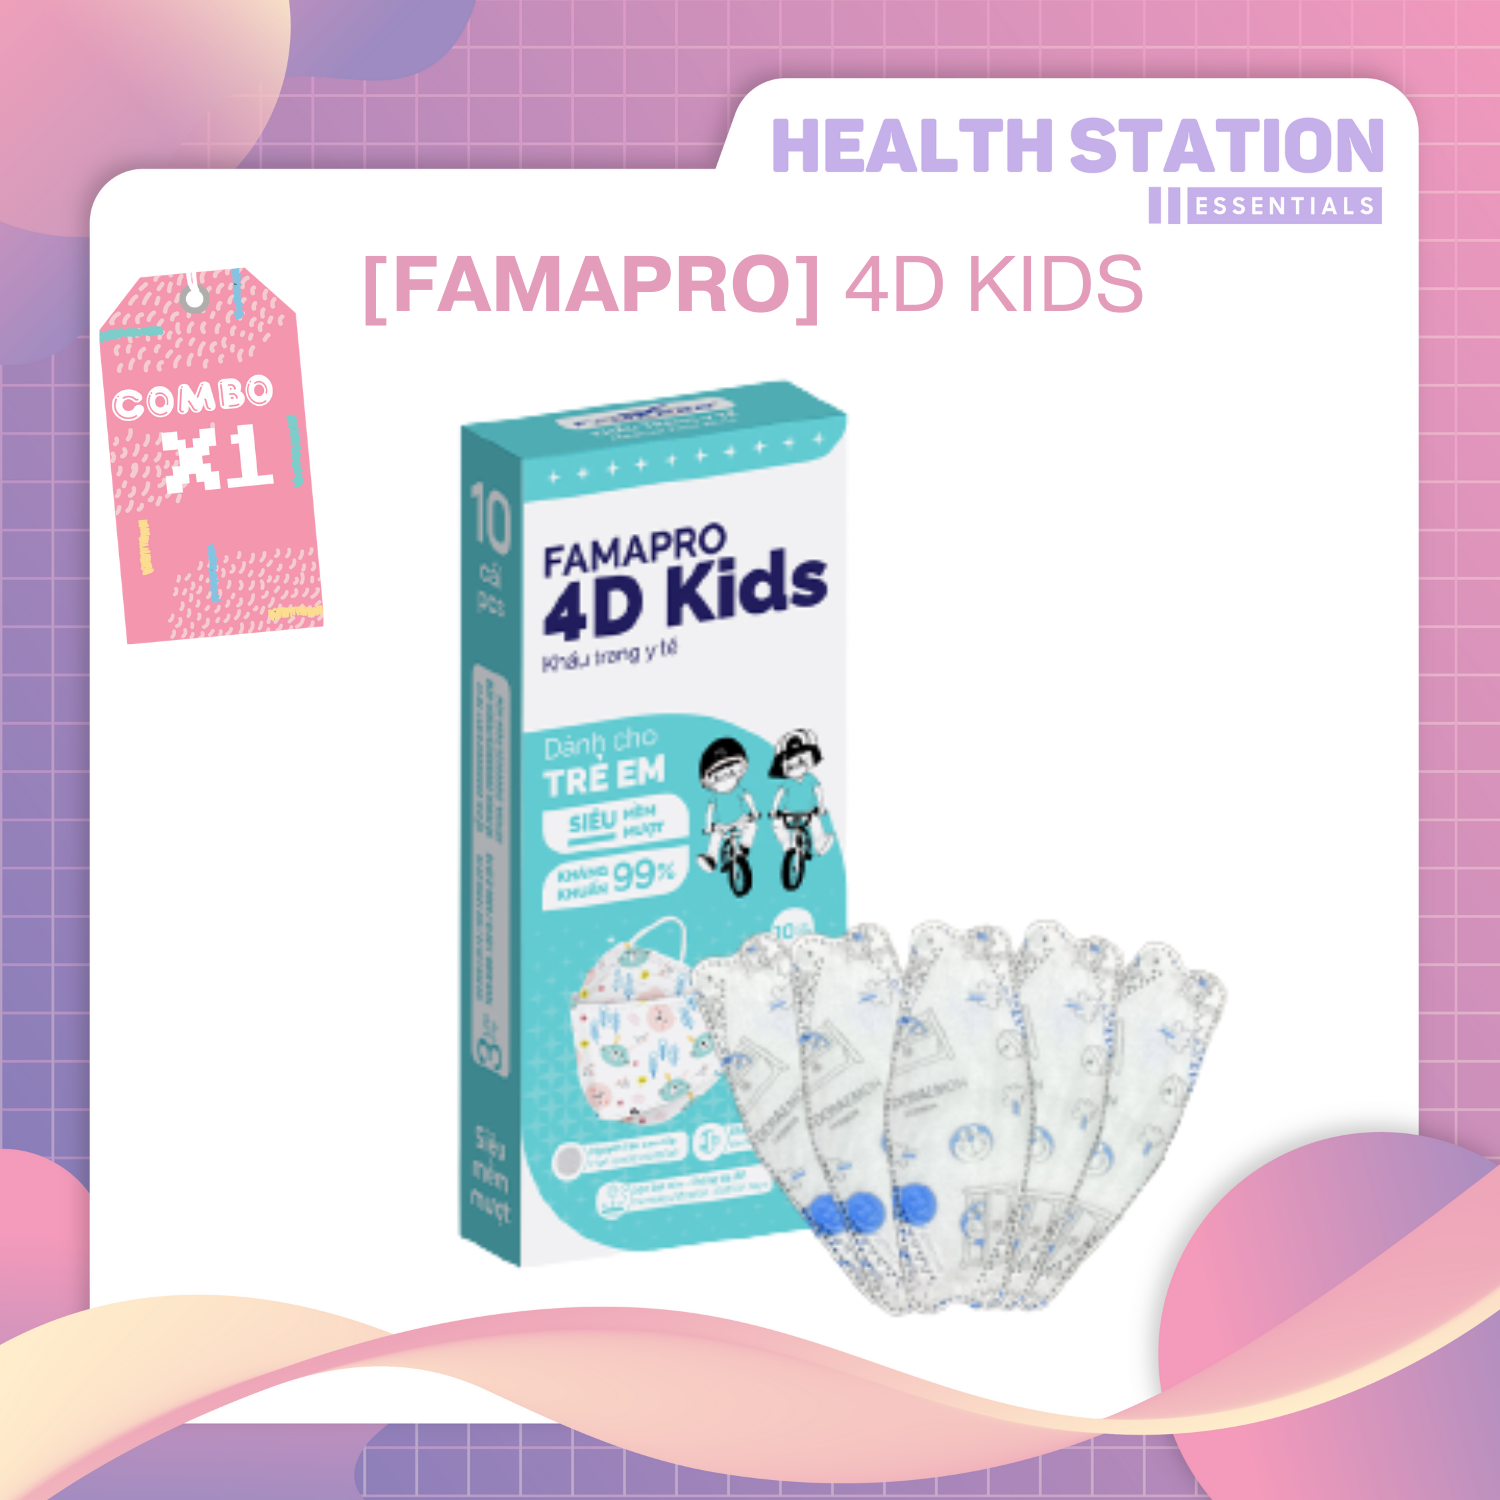 - Khẩu trang TRẺ EM kháng khuẩn cao cấp Famapro 4D KIDS tiêu chuẩn KF94